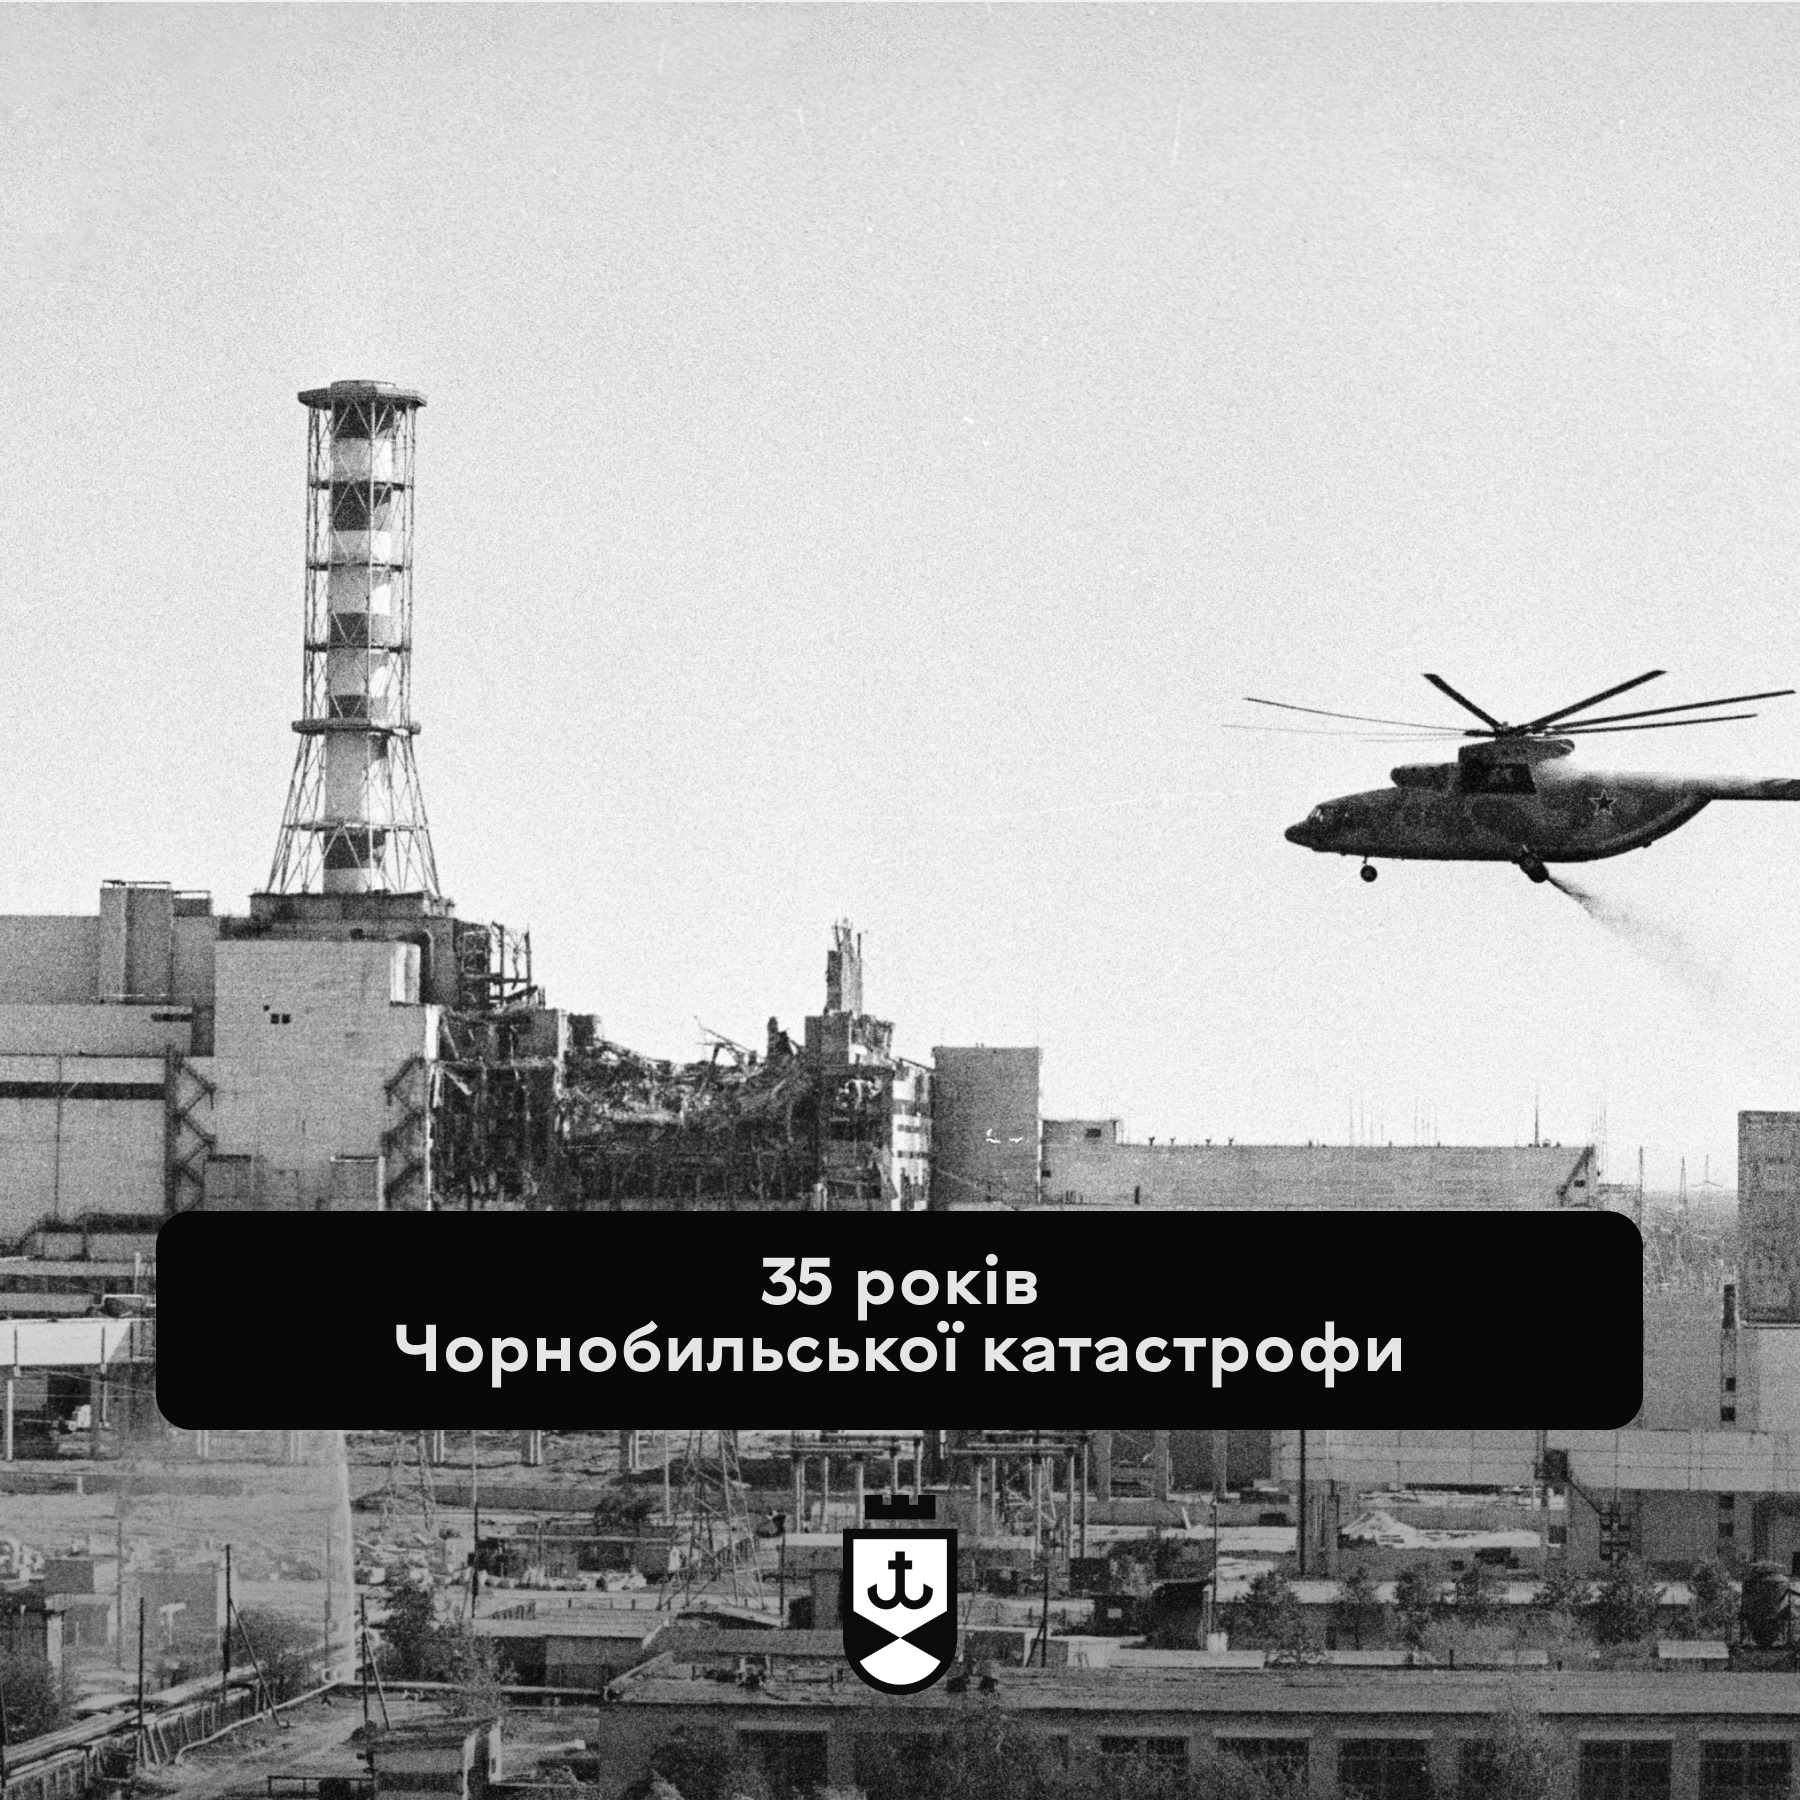 Сергій Моргунов: Чорнобиль змусив світ багато що переосмислити